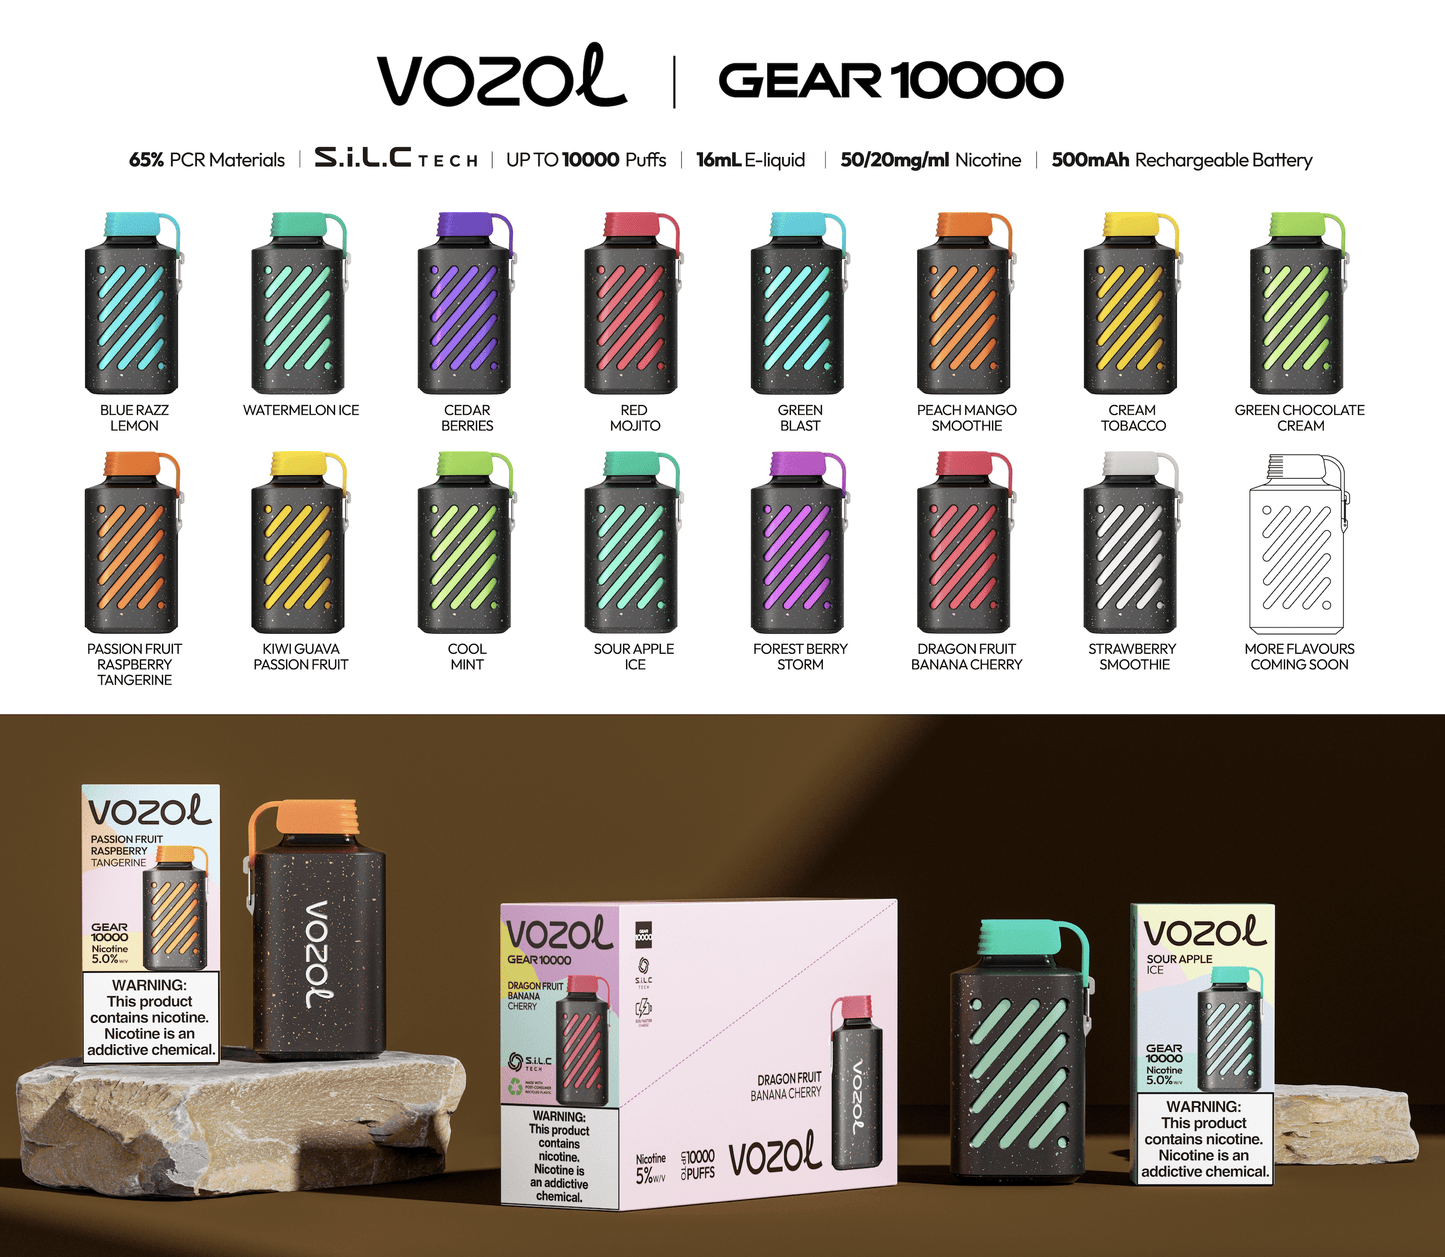 VOZOL Gear 10000 Puffs Disposable Vape